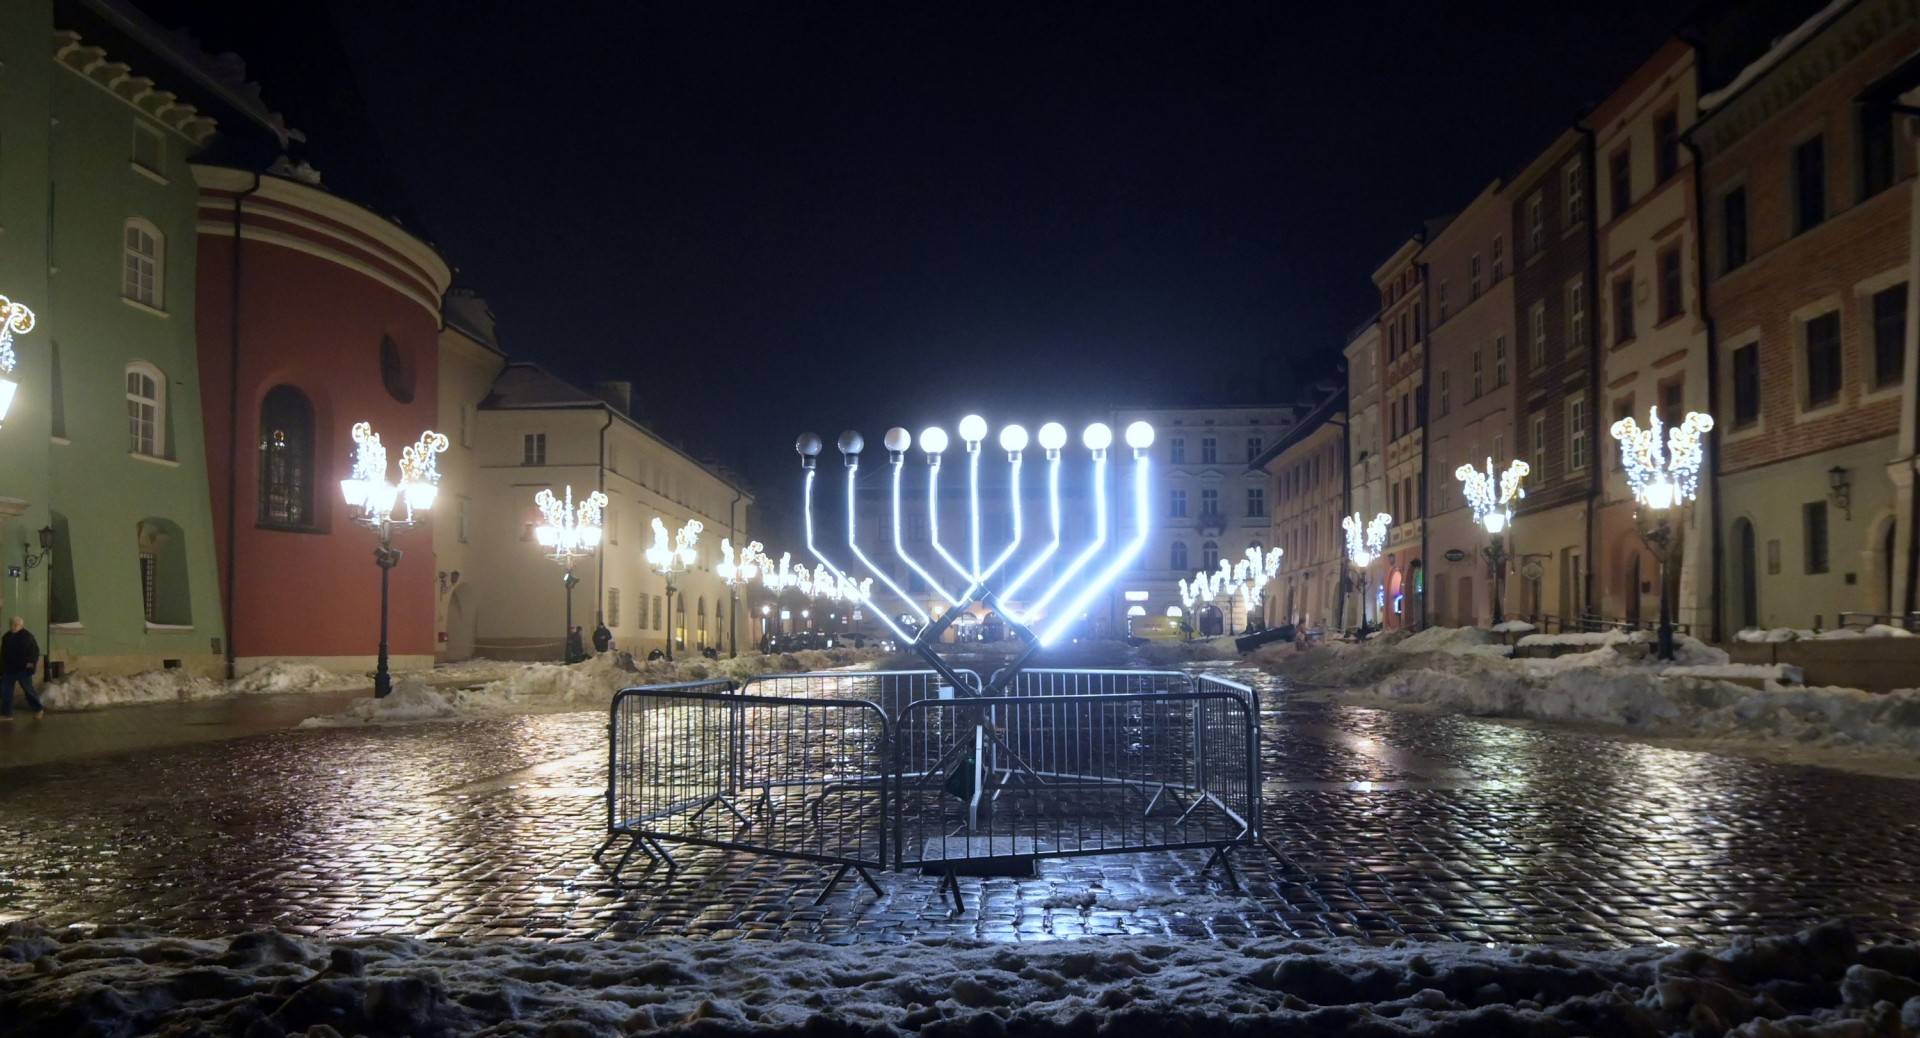 Kraków celebruje radosne żydowskie święto - Chanukę. Piękny gest